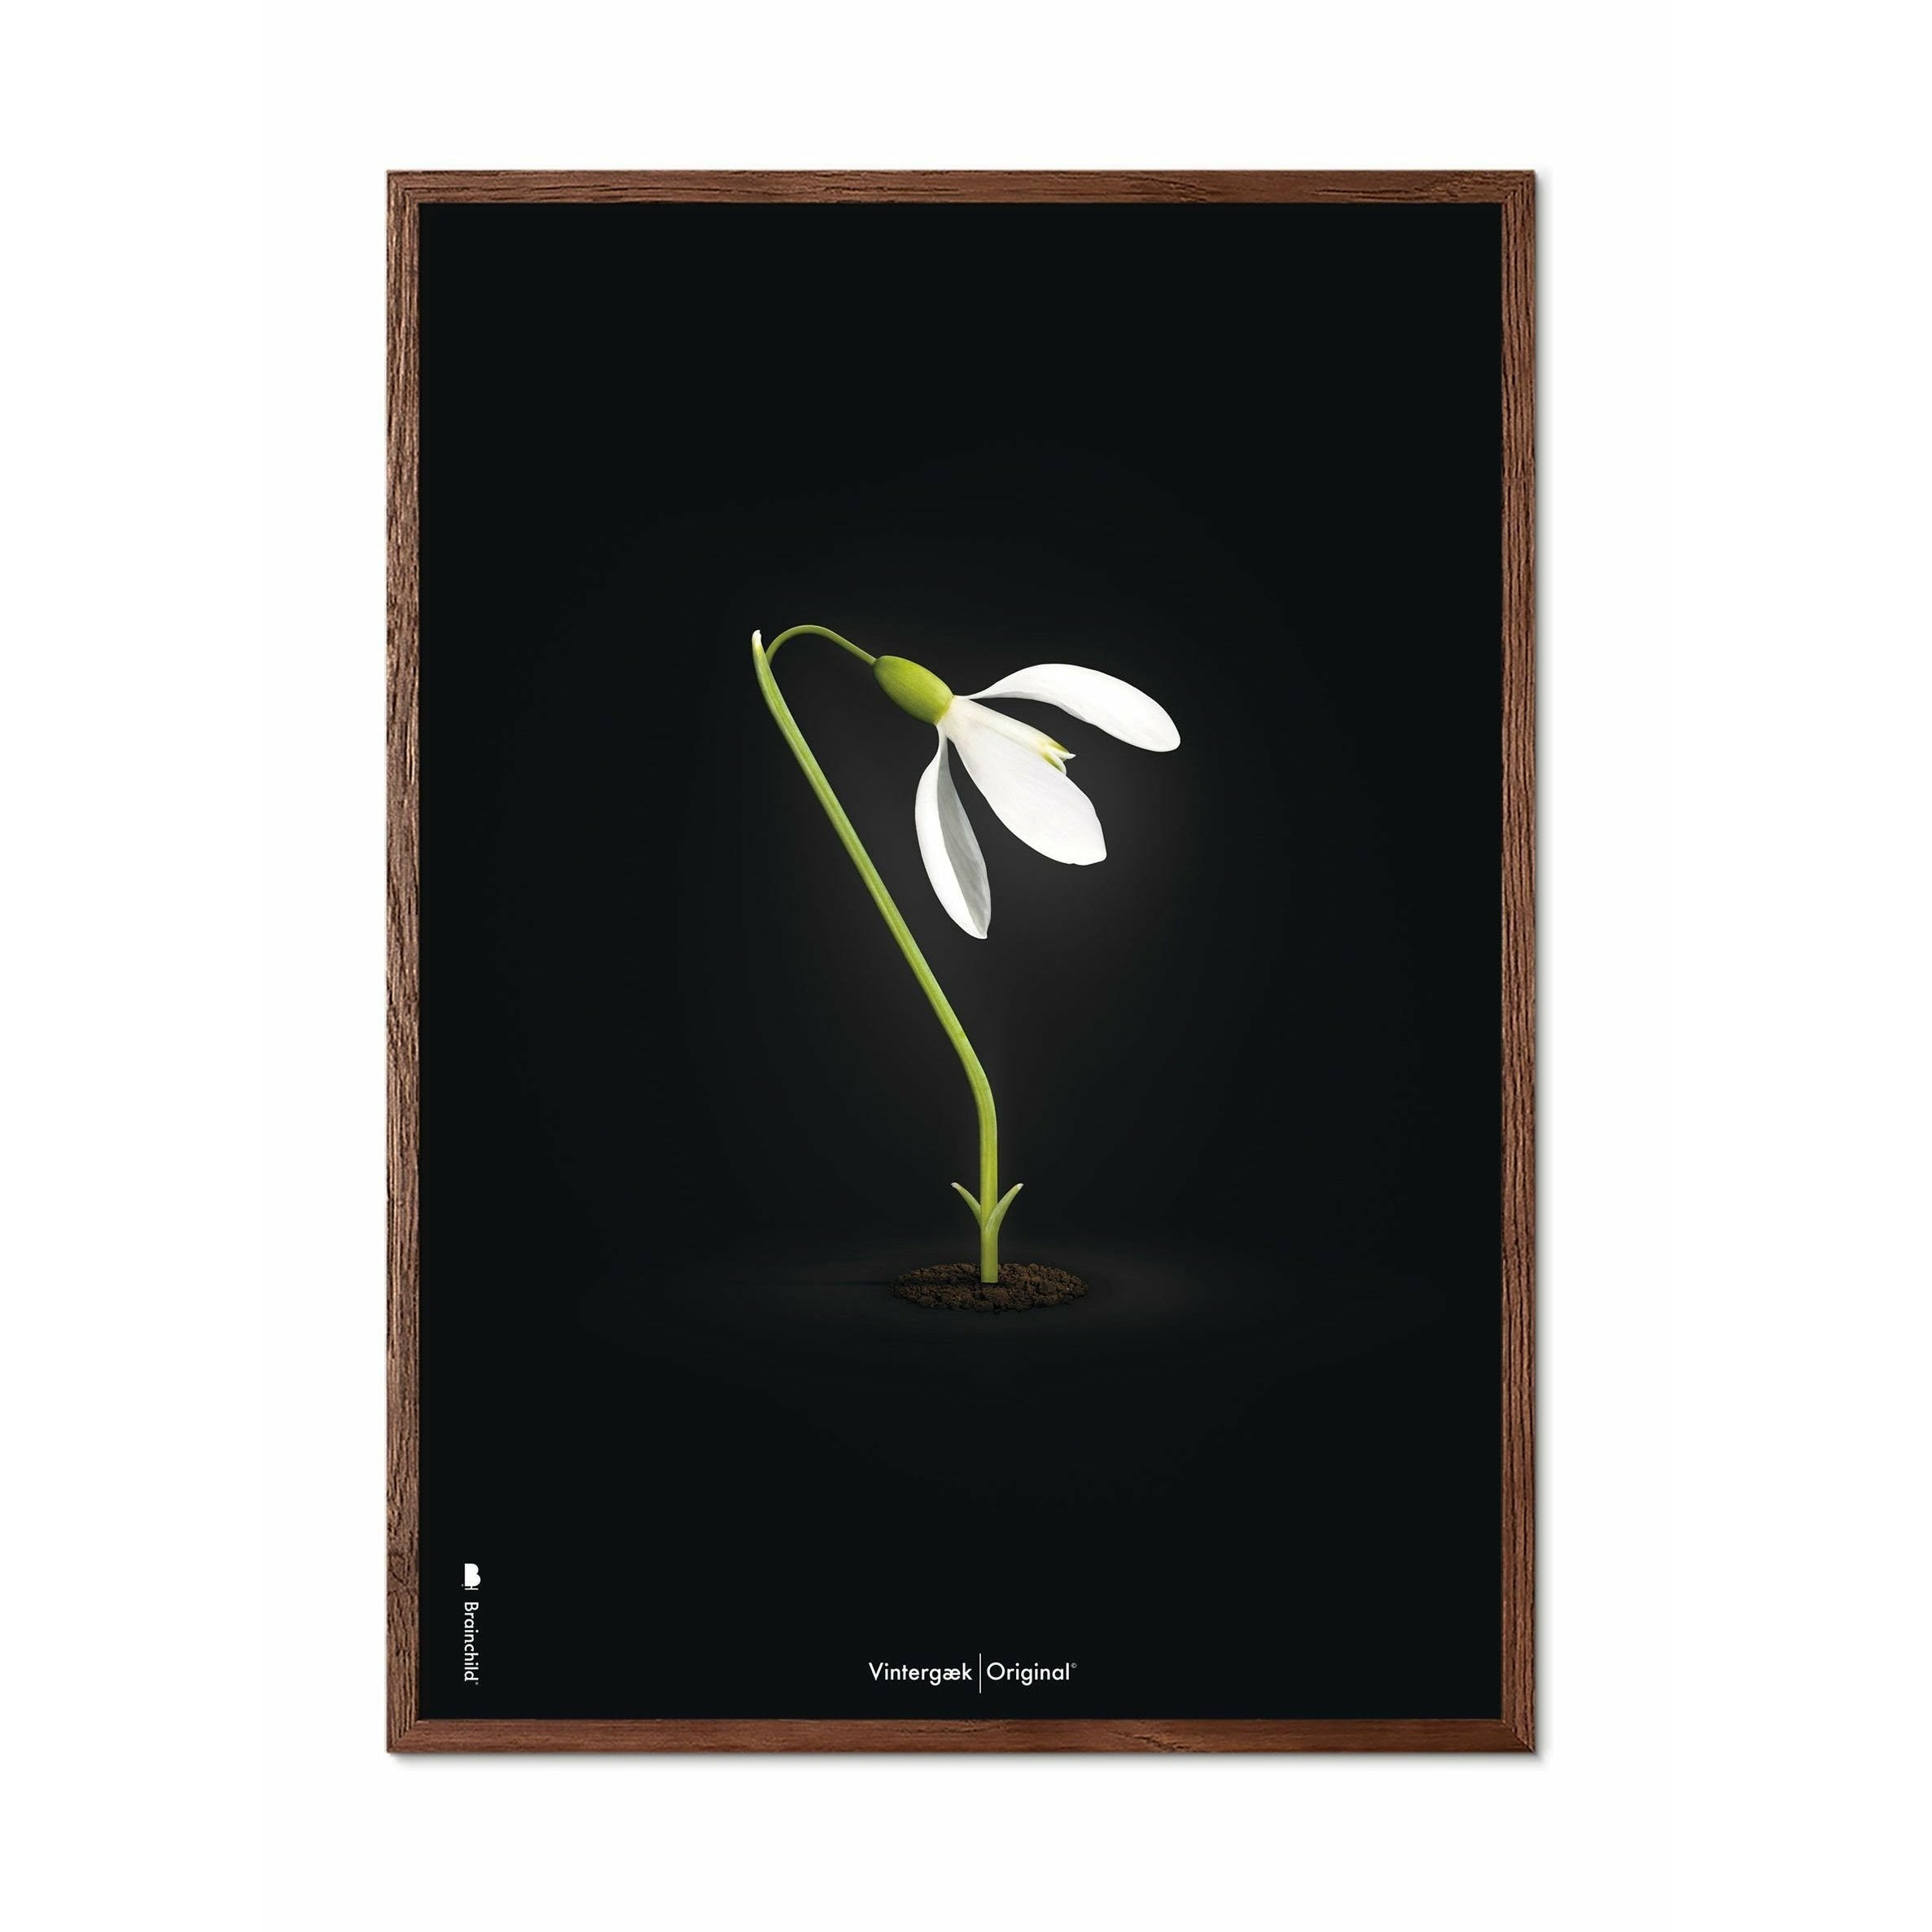 Brainchild Snowdrop Classic plakát, rám vyrobený z tmavého dřeva 30x40 cm, černé pozadí